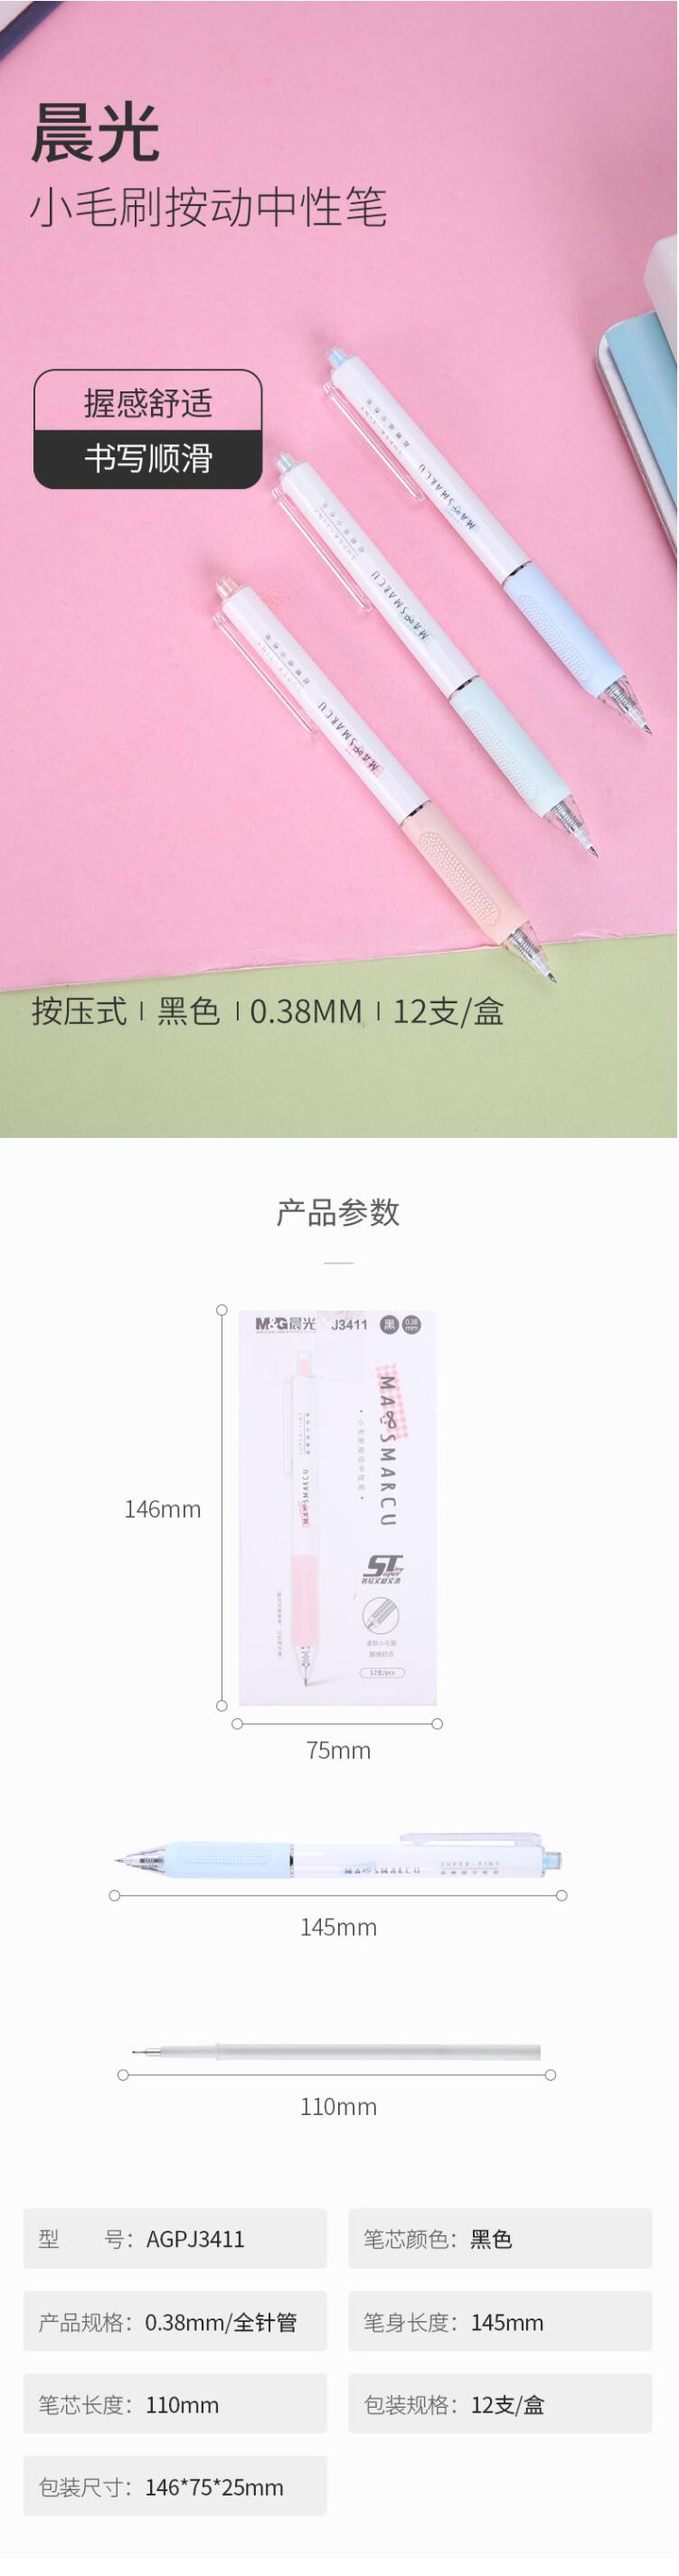 晨光(M&G) AGPJ3411 MASMARCU系列全针管中性笔 0.38mm 黑色2.jpg